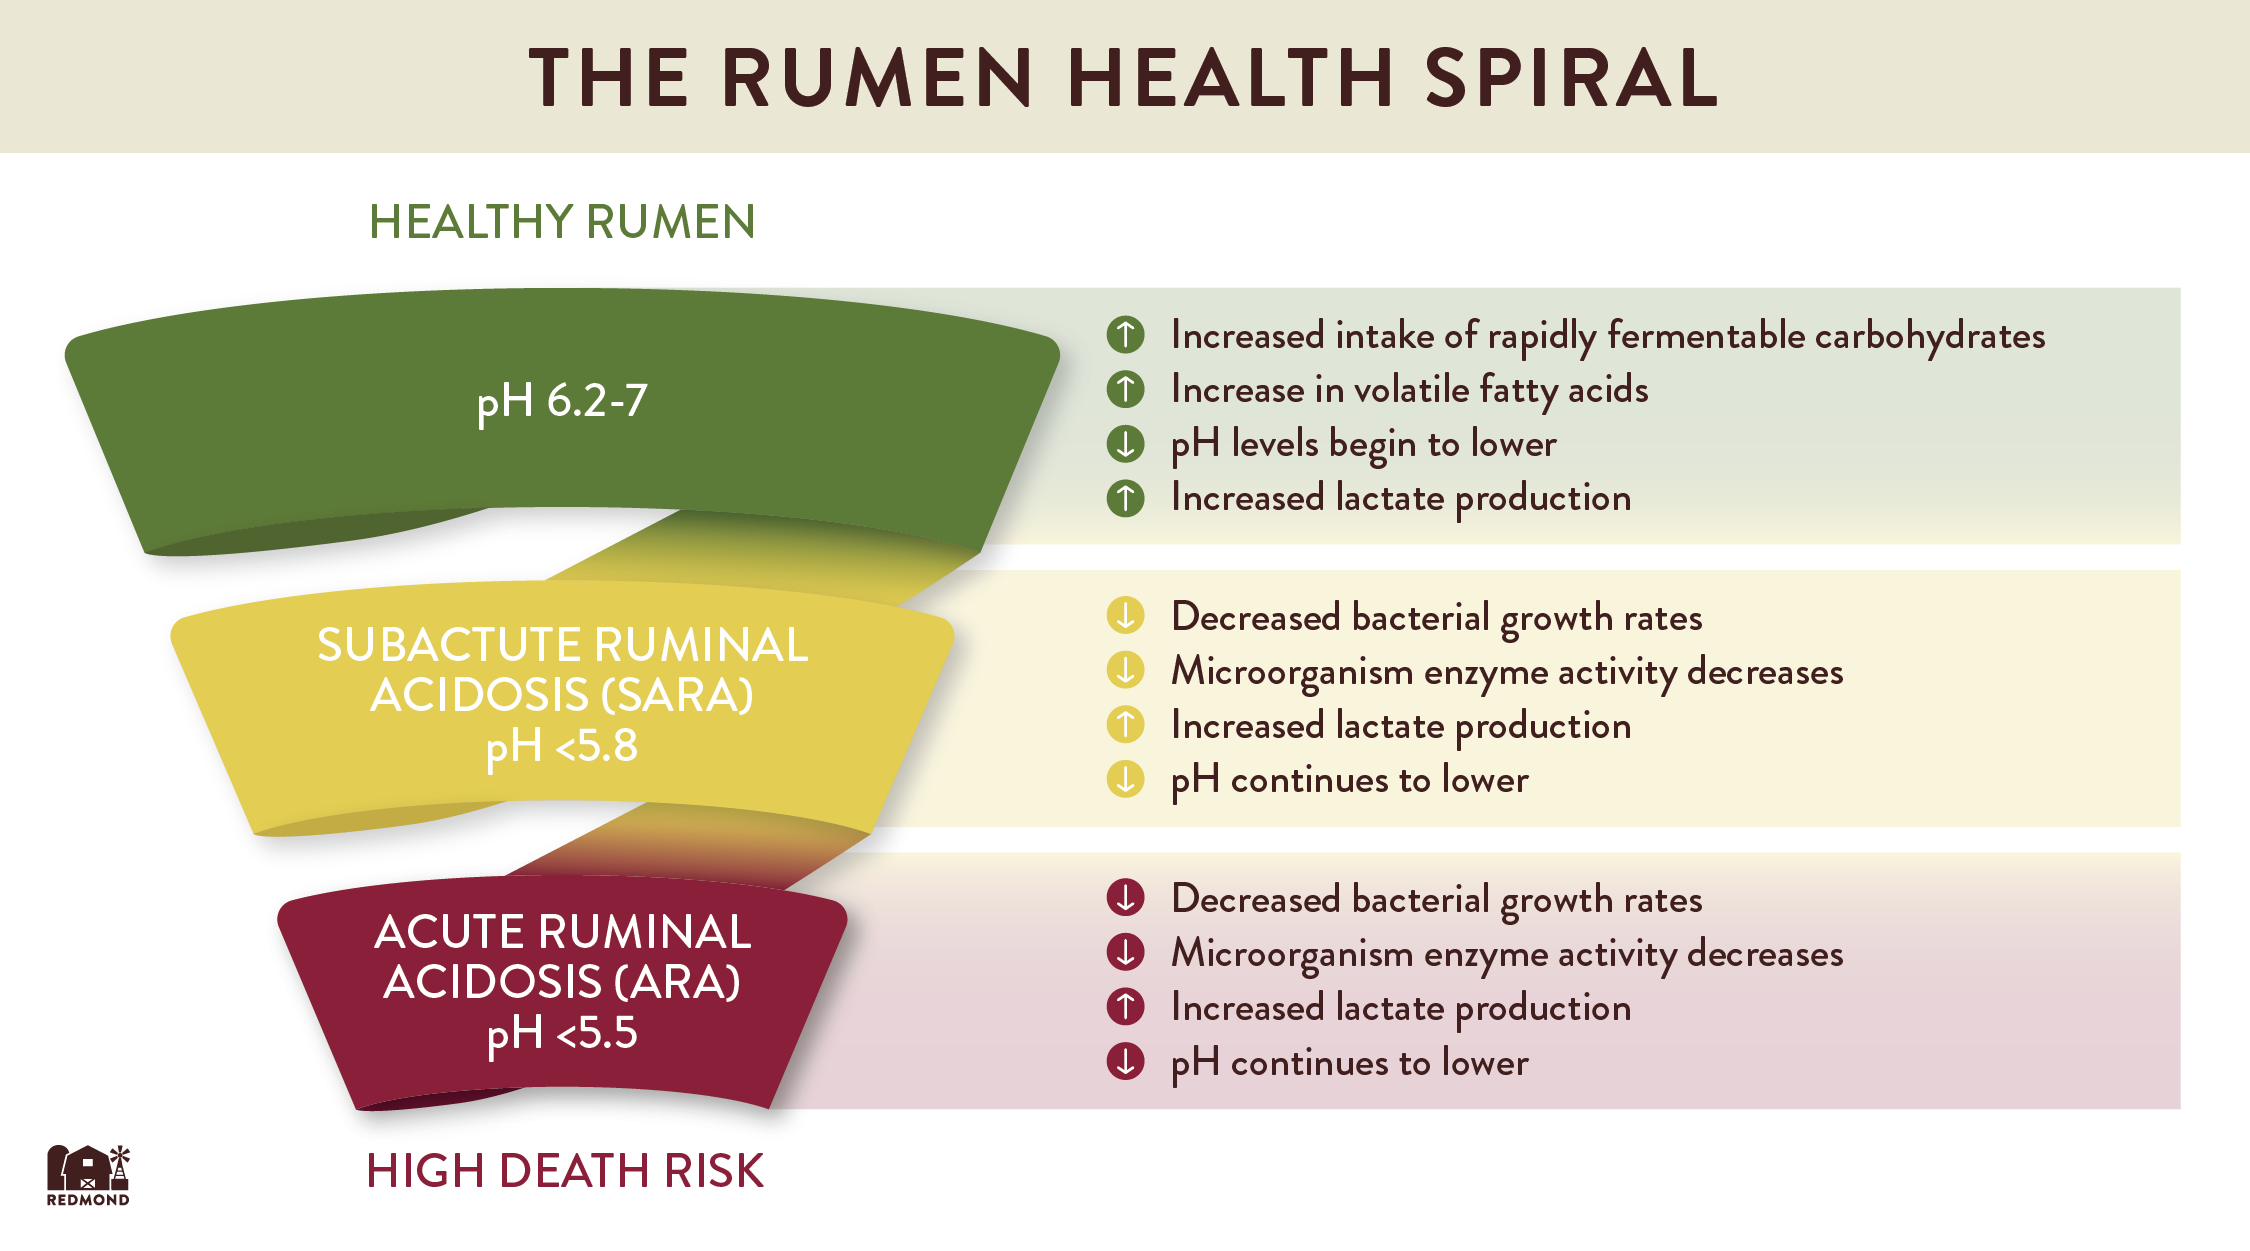 The rumen health spiral